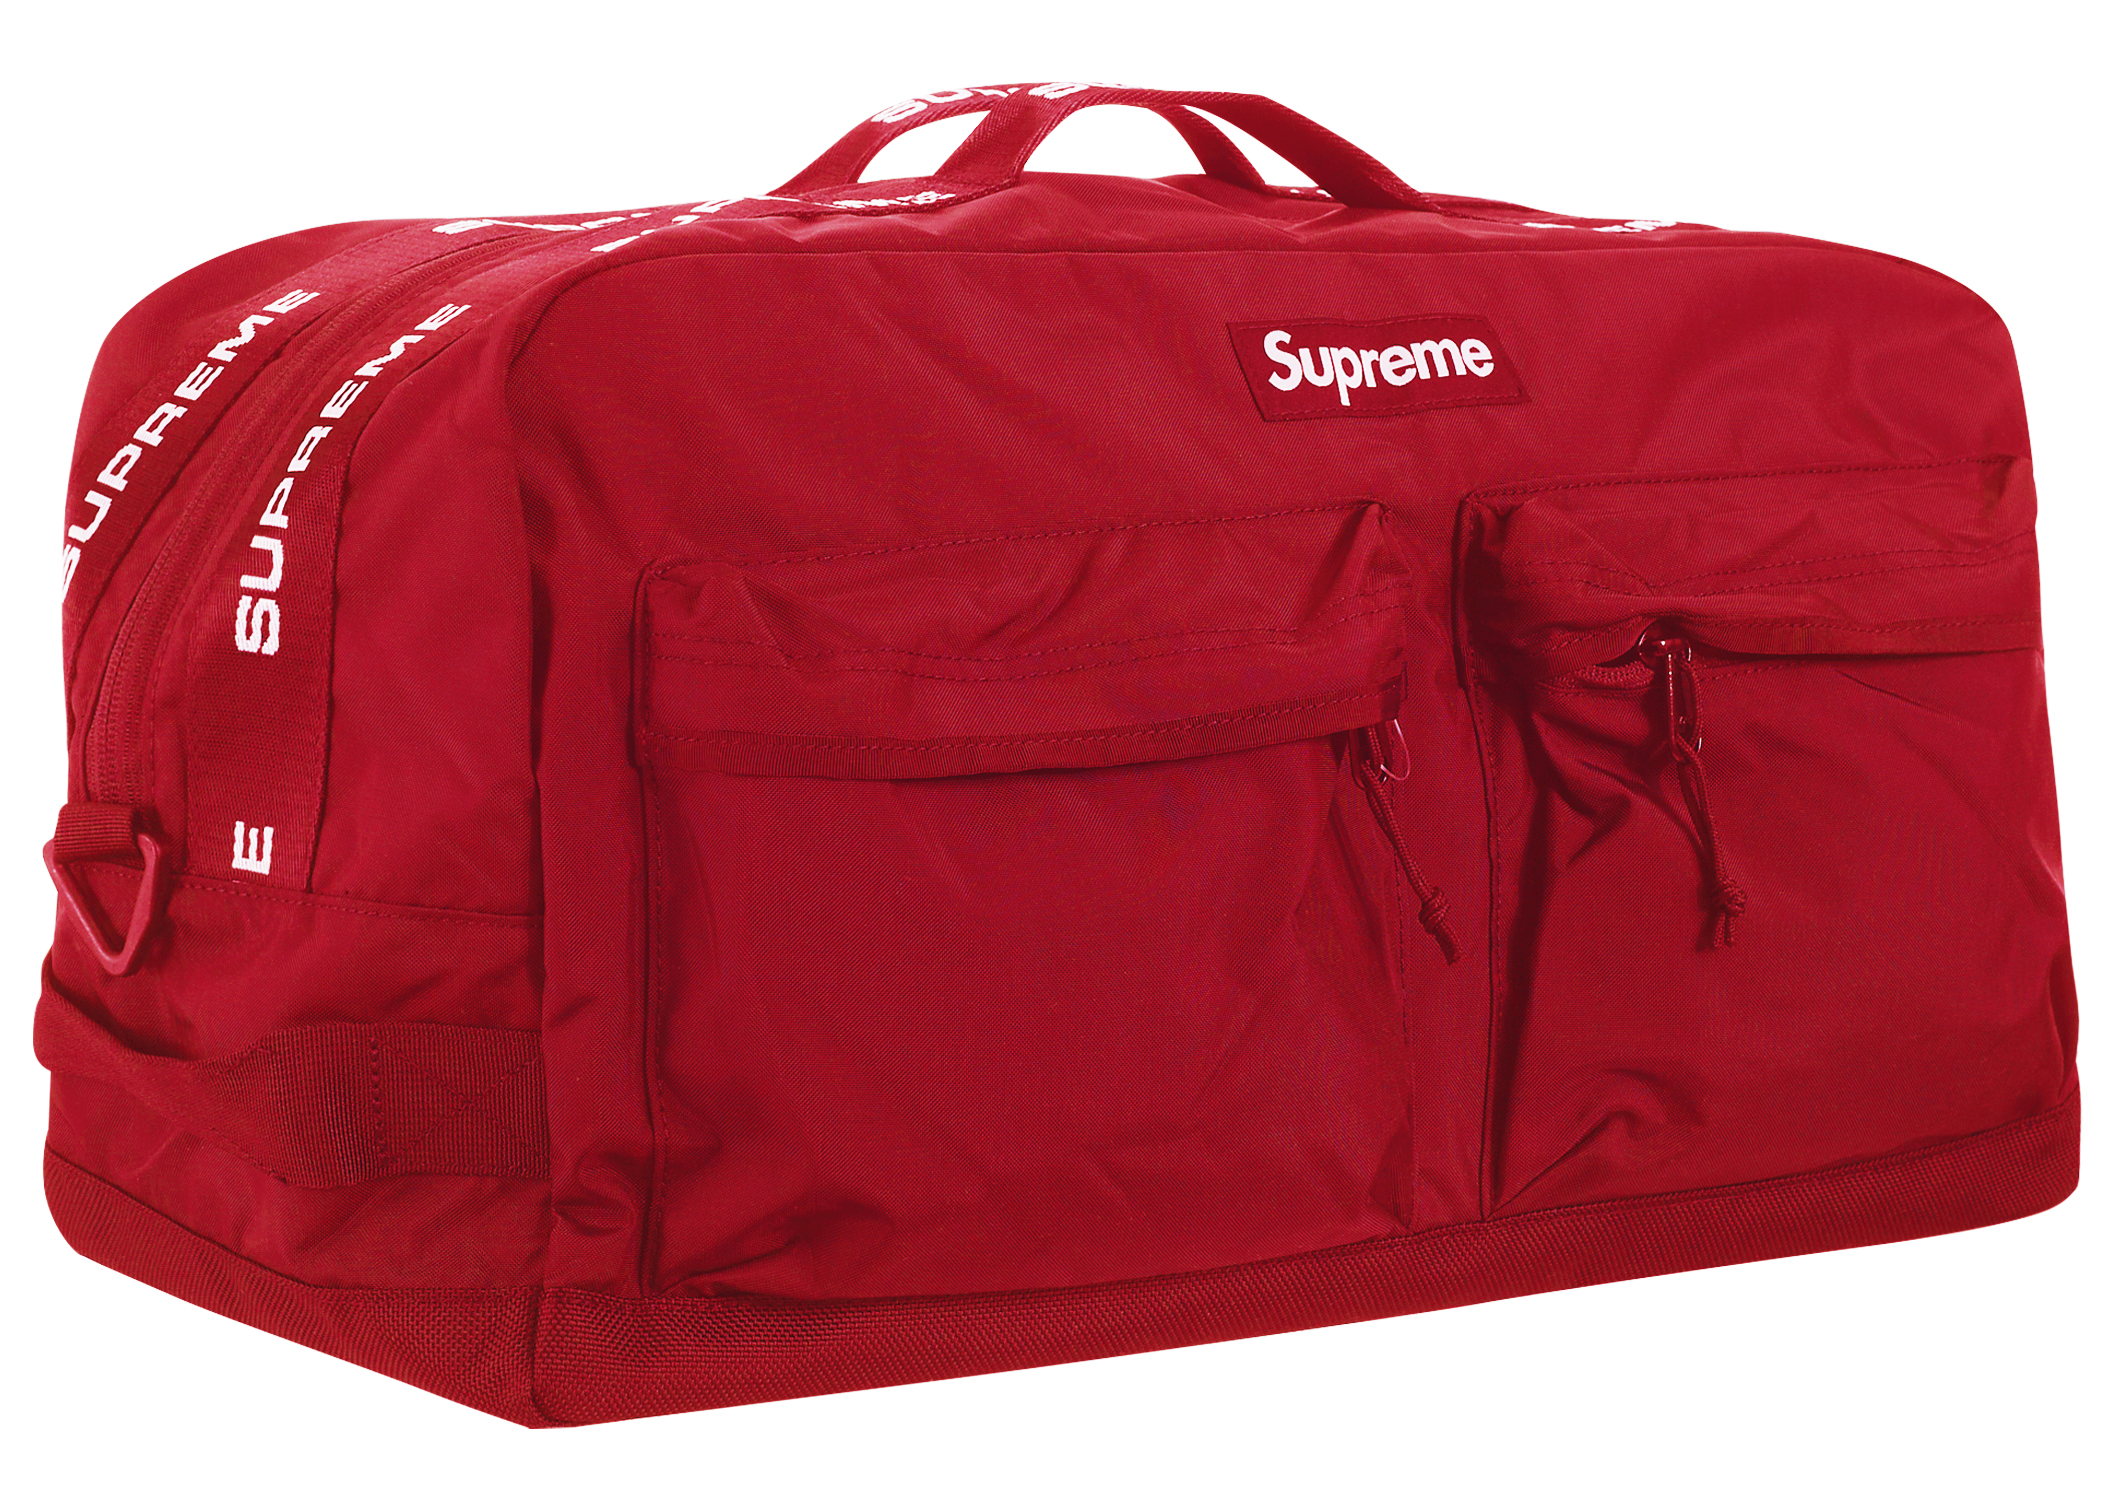 Supreme Duffle Bag (SS19)サイズONESIZE - ボストンバッグ